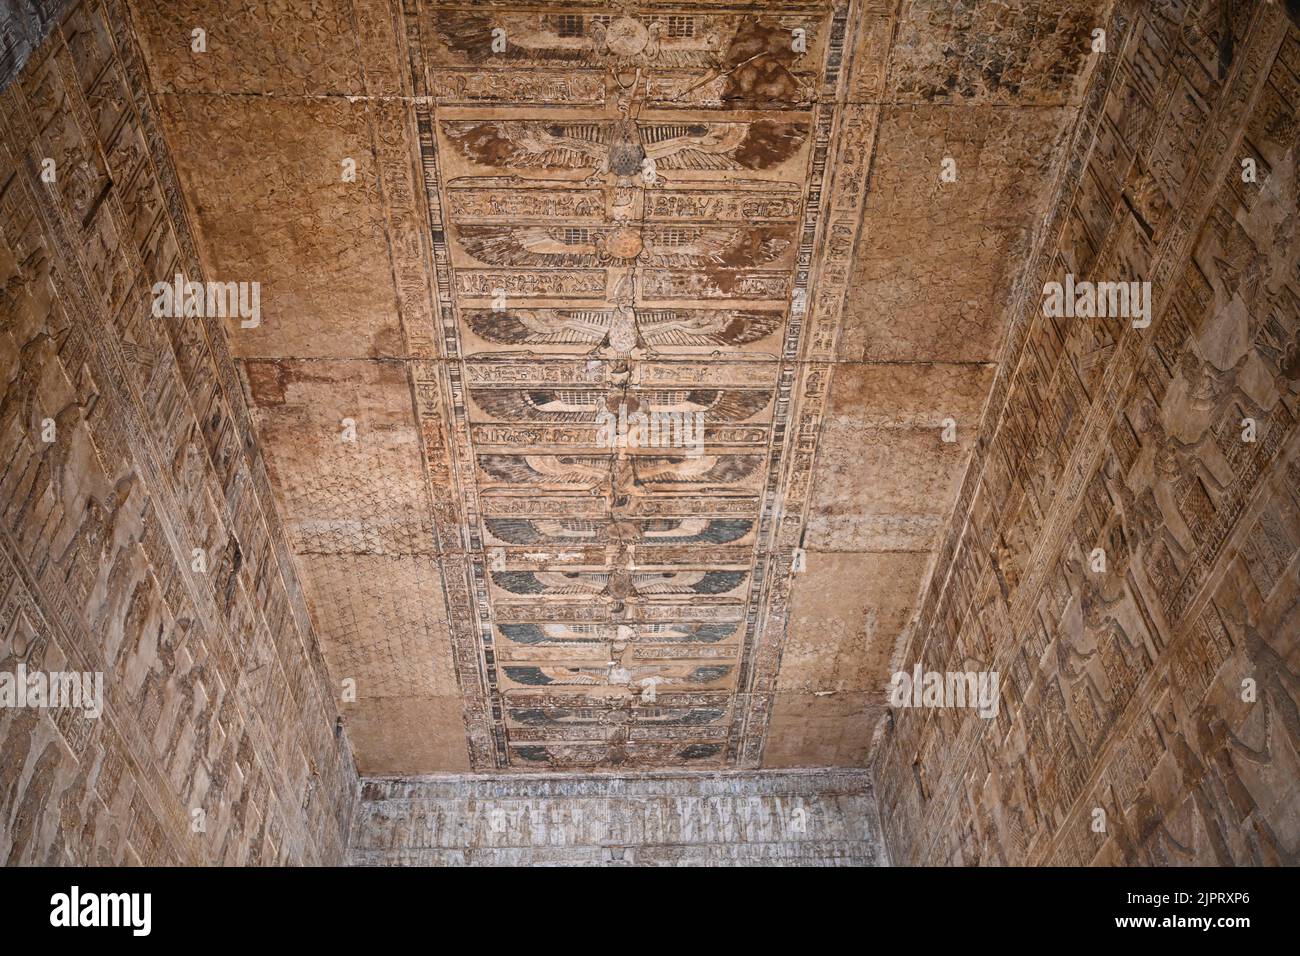 Deckenrelief, Geier, Innenraum, Geburtstempel Mamisi der Göttin Hathor, Hathor-Tempel, Dendera, Qina, Ägitten Banque D'Images